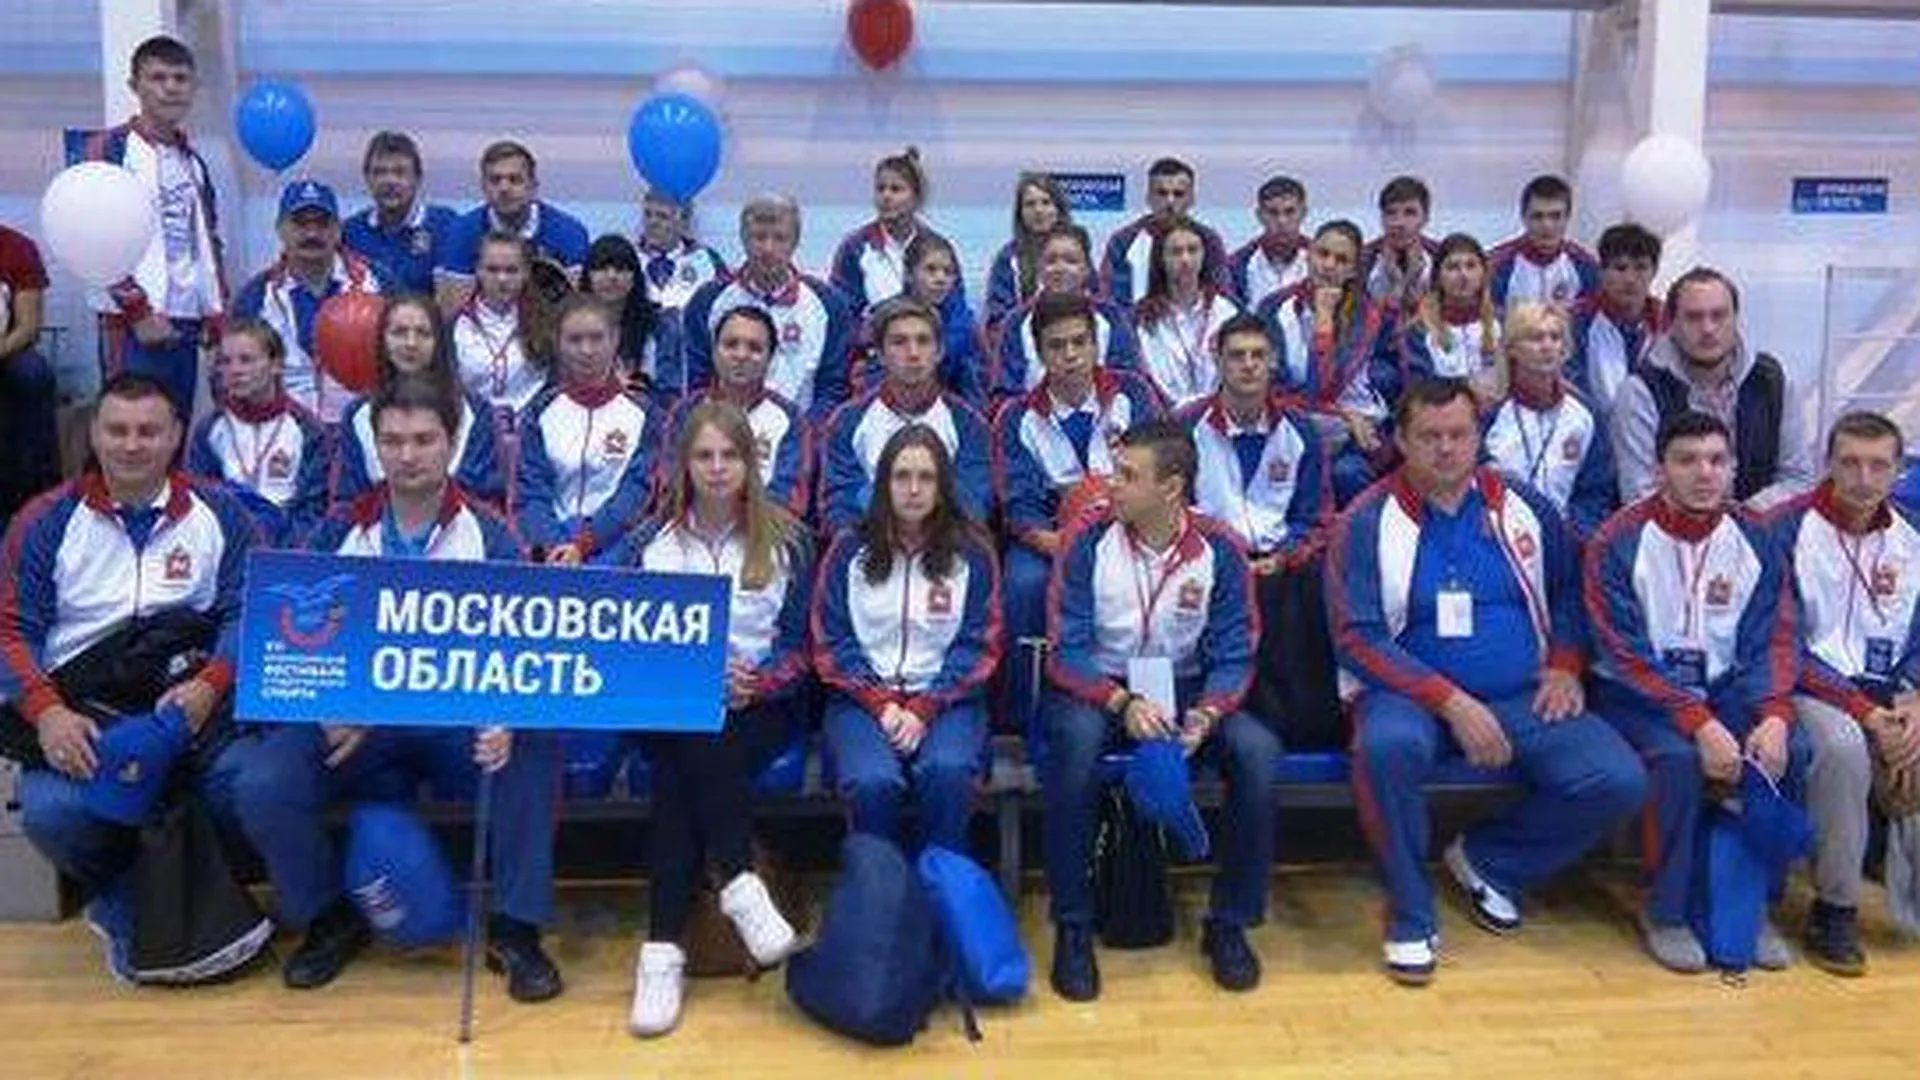 Студенты из Коломны участвуют во Всероссийском фестивале спорта